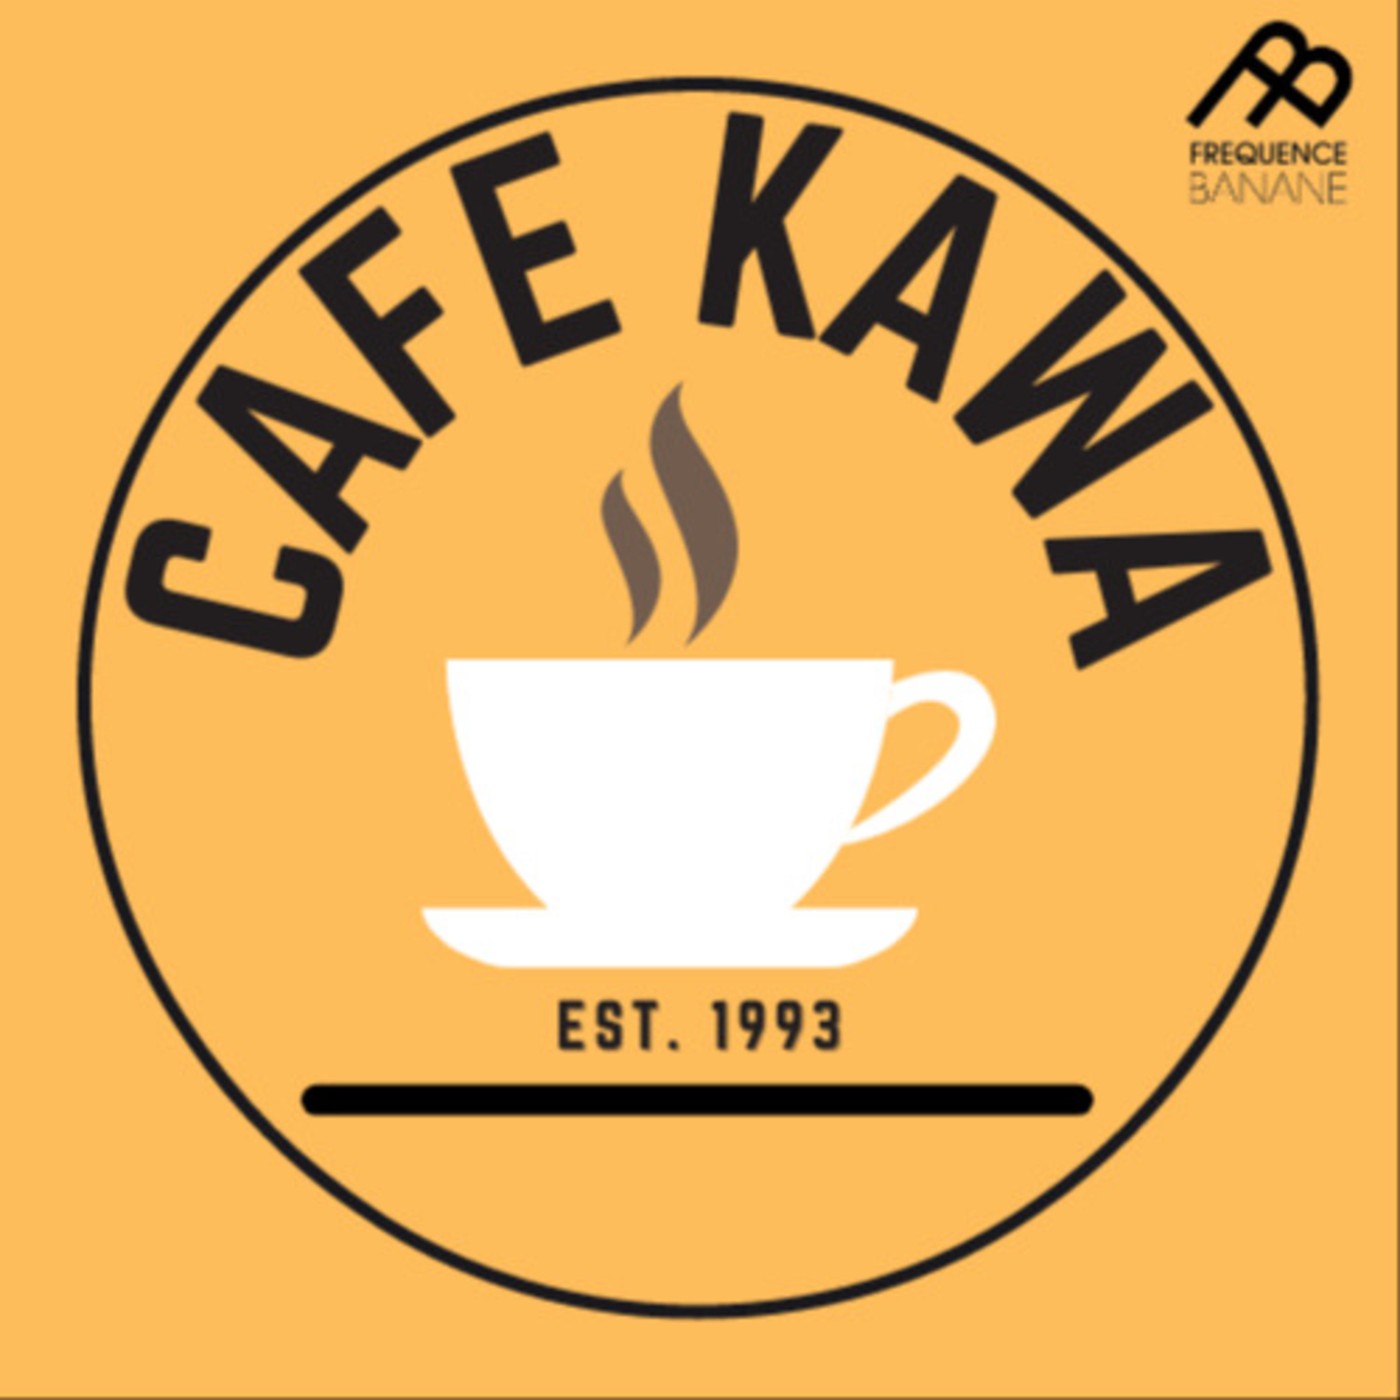 CaféKawa du 17.02 - Voix 5 3/4